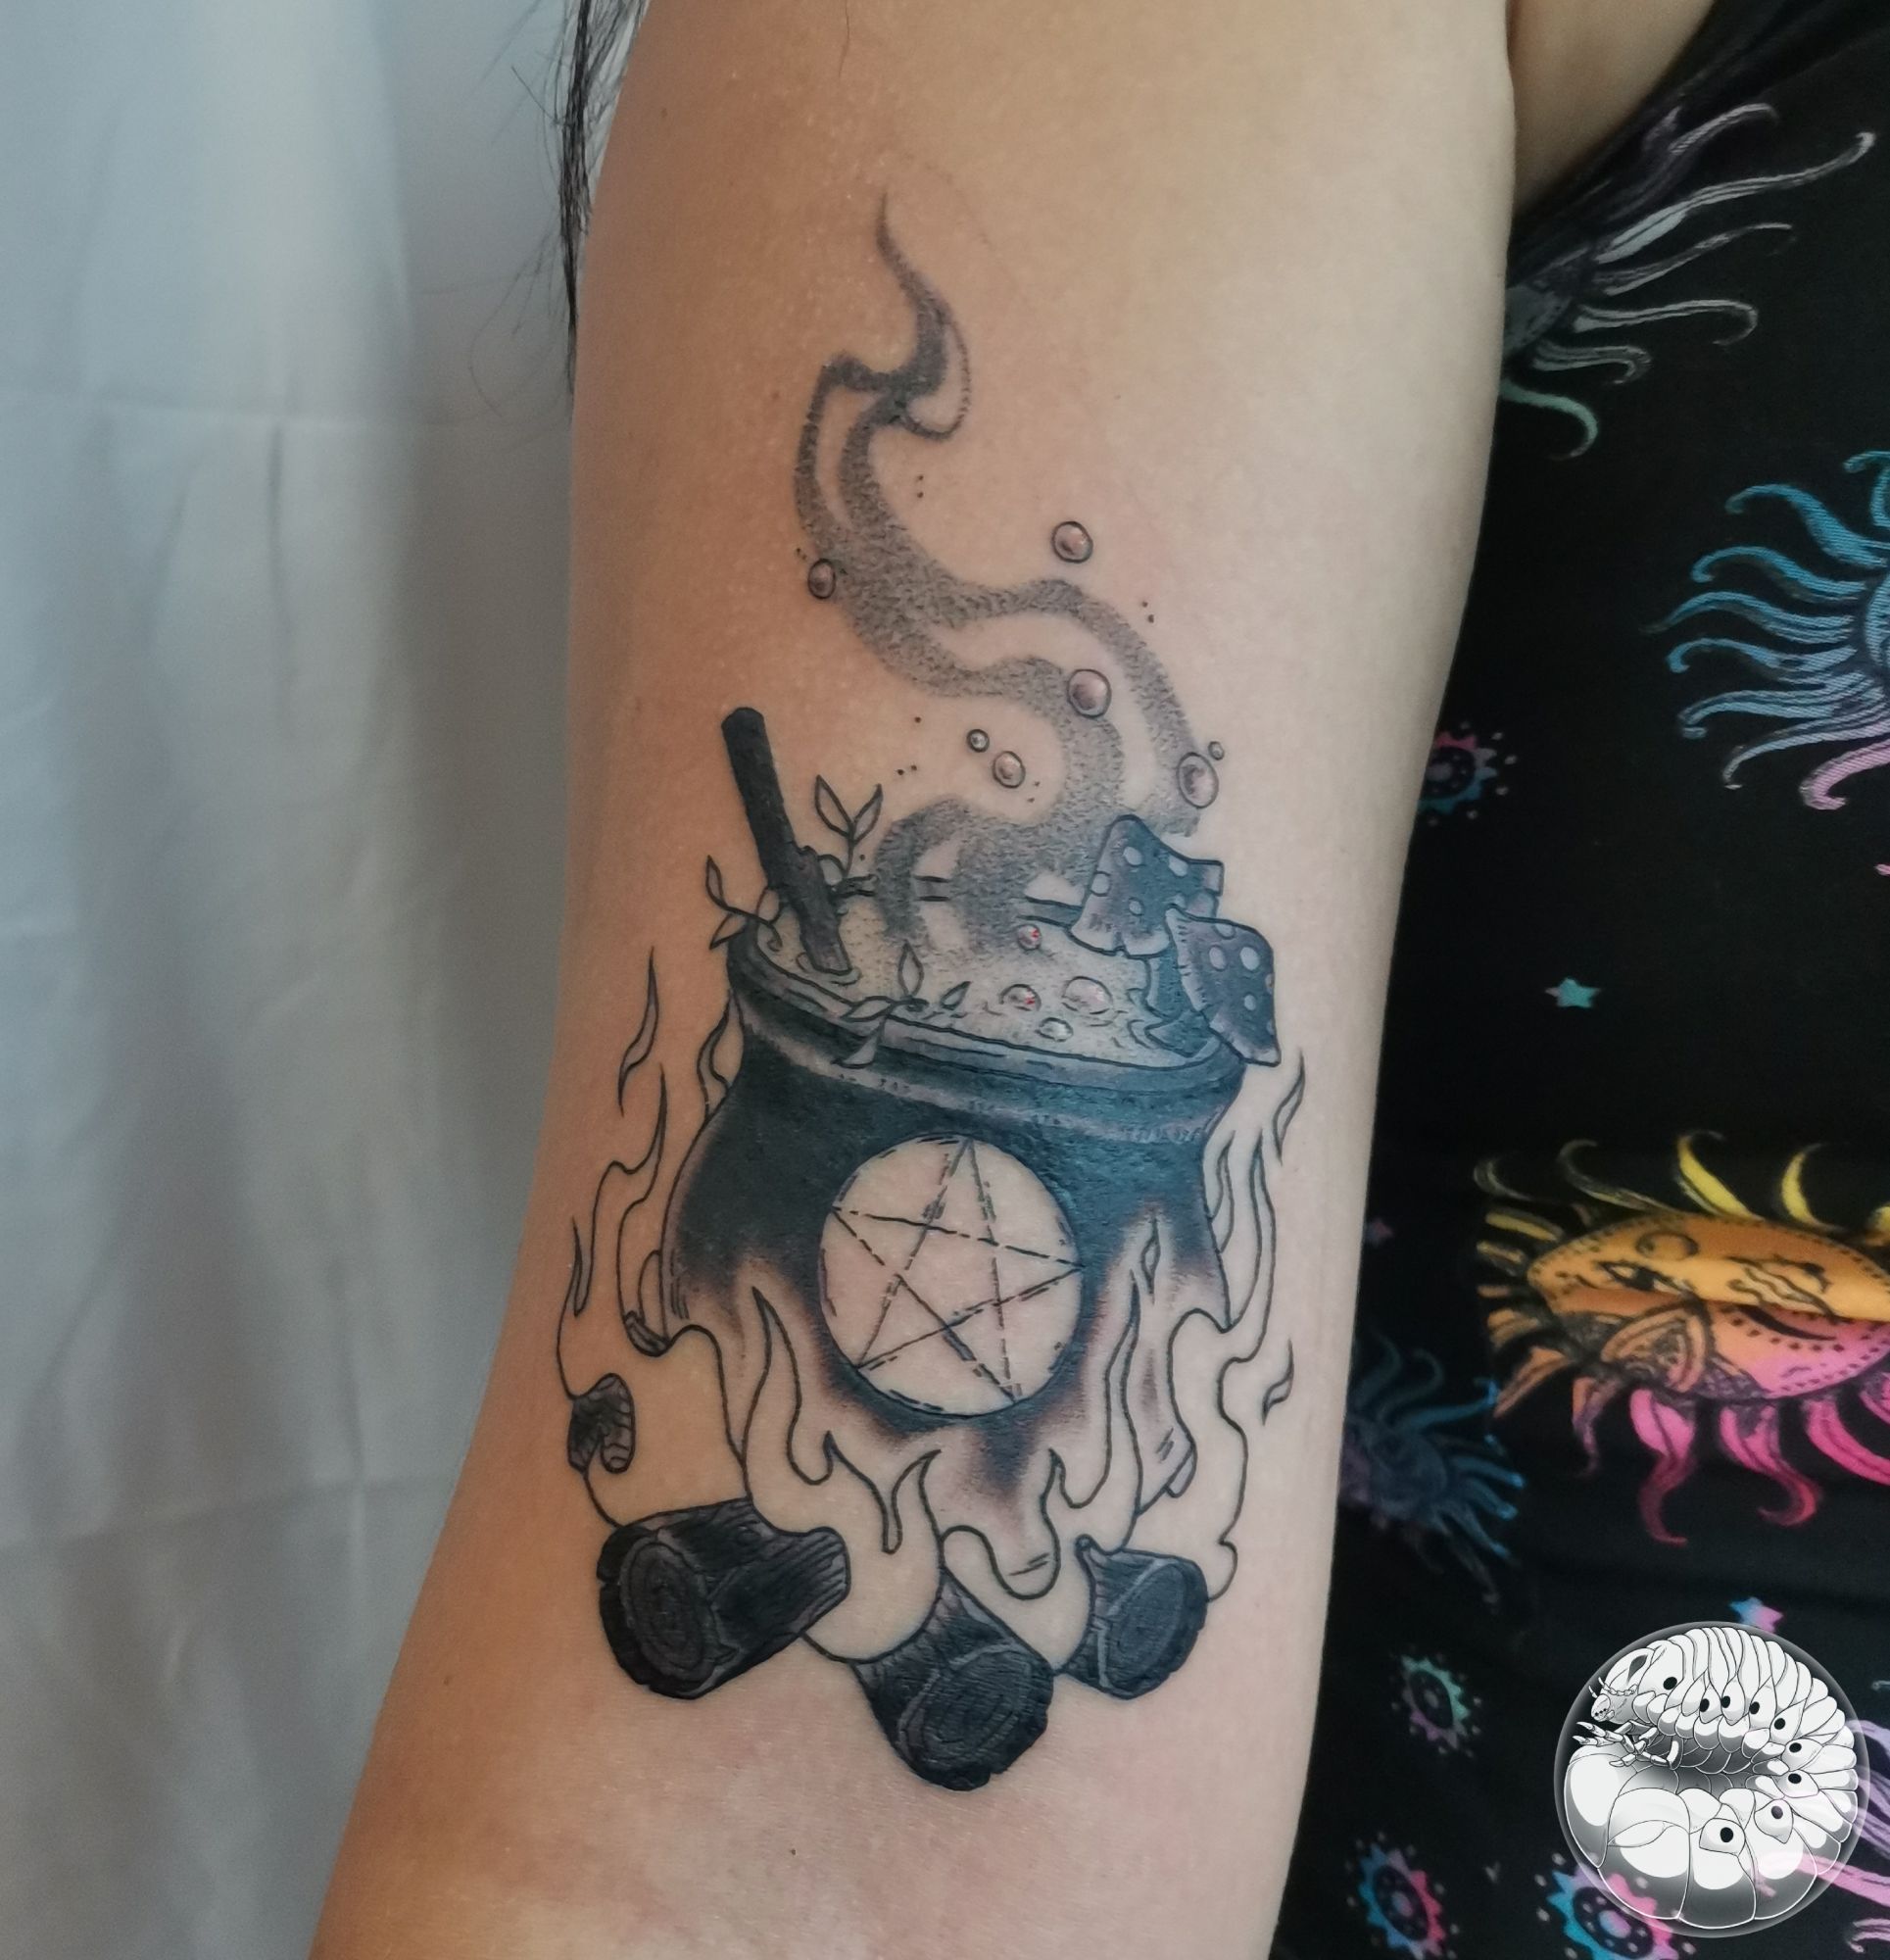 Cauldron tattoo  witchy tattoo  Ink tattoo Tattoo designs Blackwork  tattoo